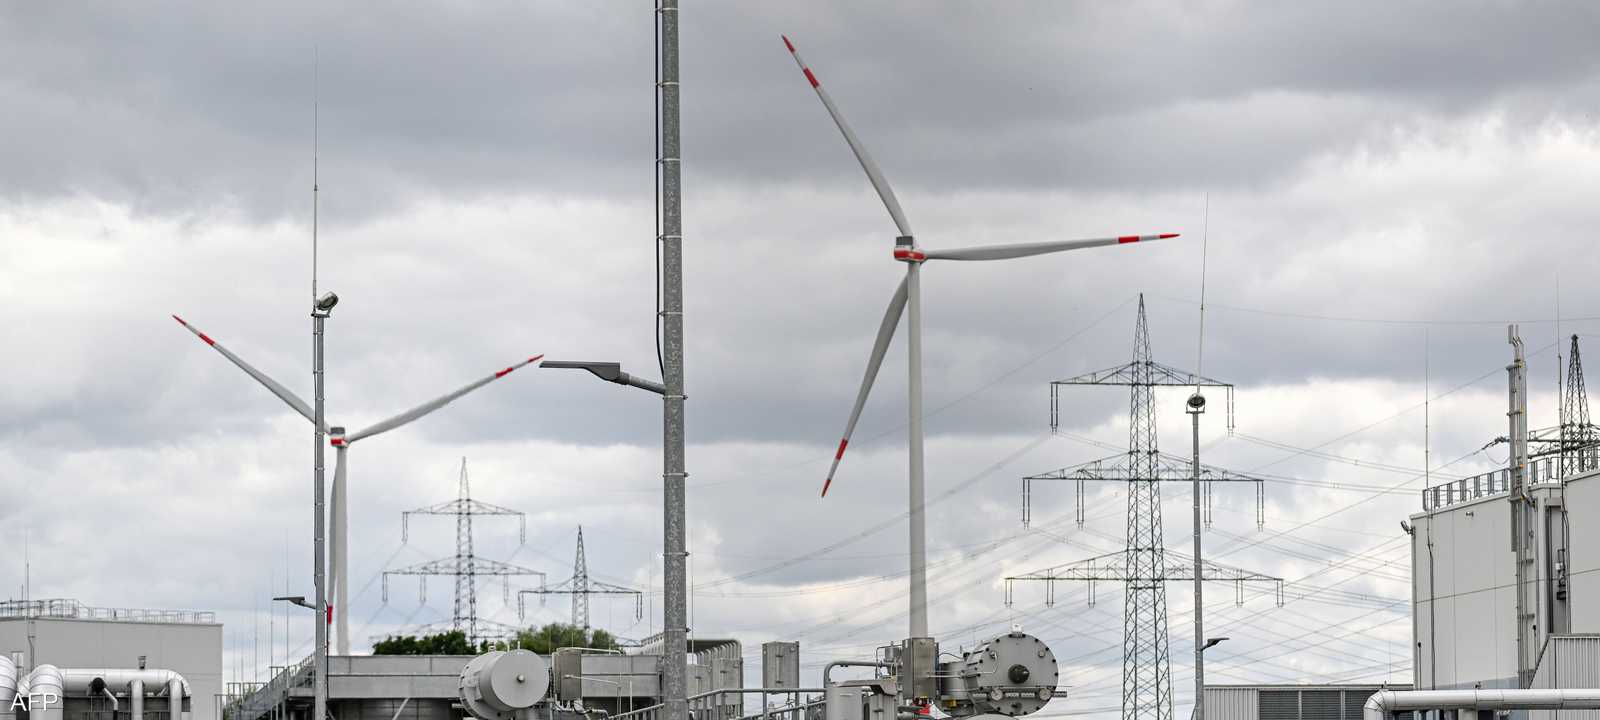 تزايد استخدام الطاقة المتجددة في توليد الكهرباء في أوروبا